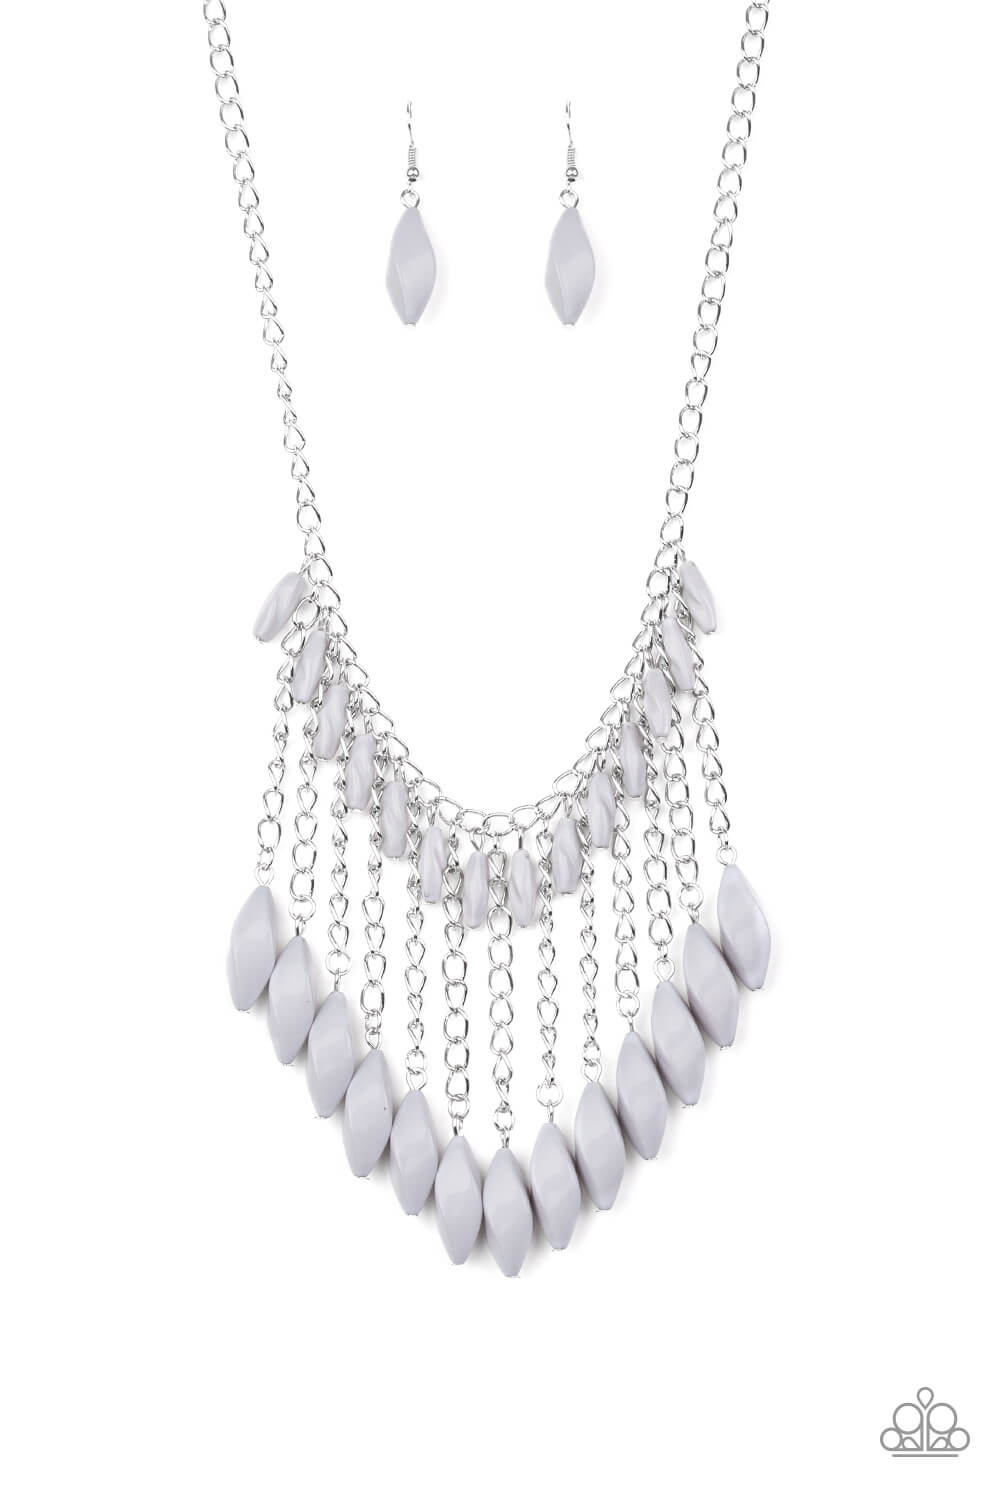 Venturous Vibes - Silver Necklace Set - Princess Glam Shop